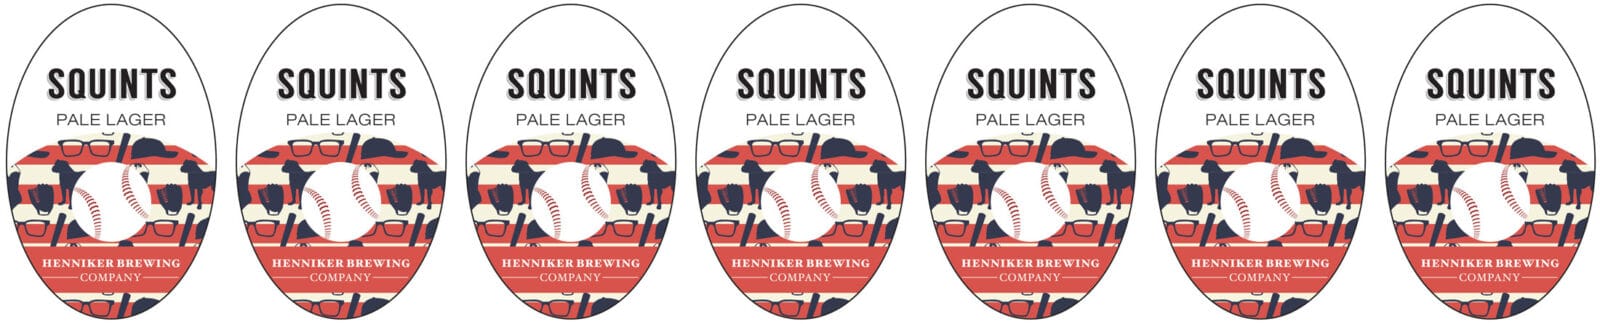 Squints Pale Ale by Henniker header